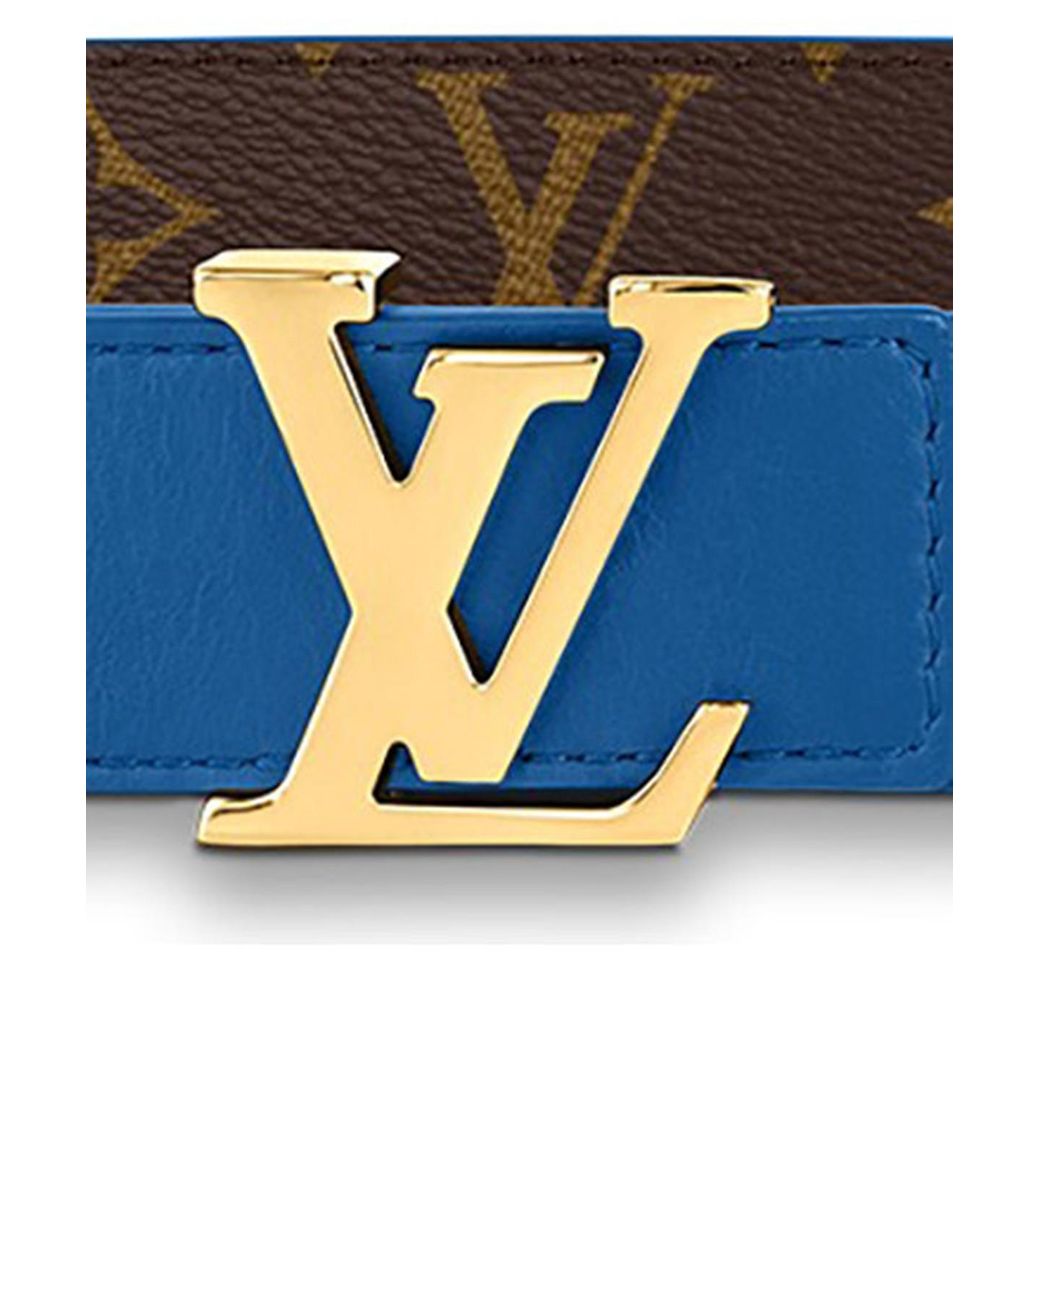 Louis Vuitton LV Initiales 30mm Reversible Belt Rose Poudre + Calf Leather. Size 85 cm